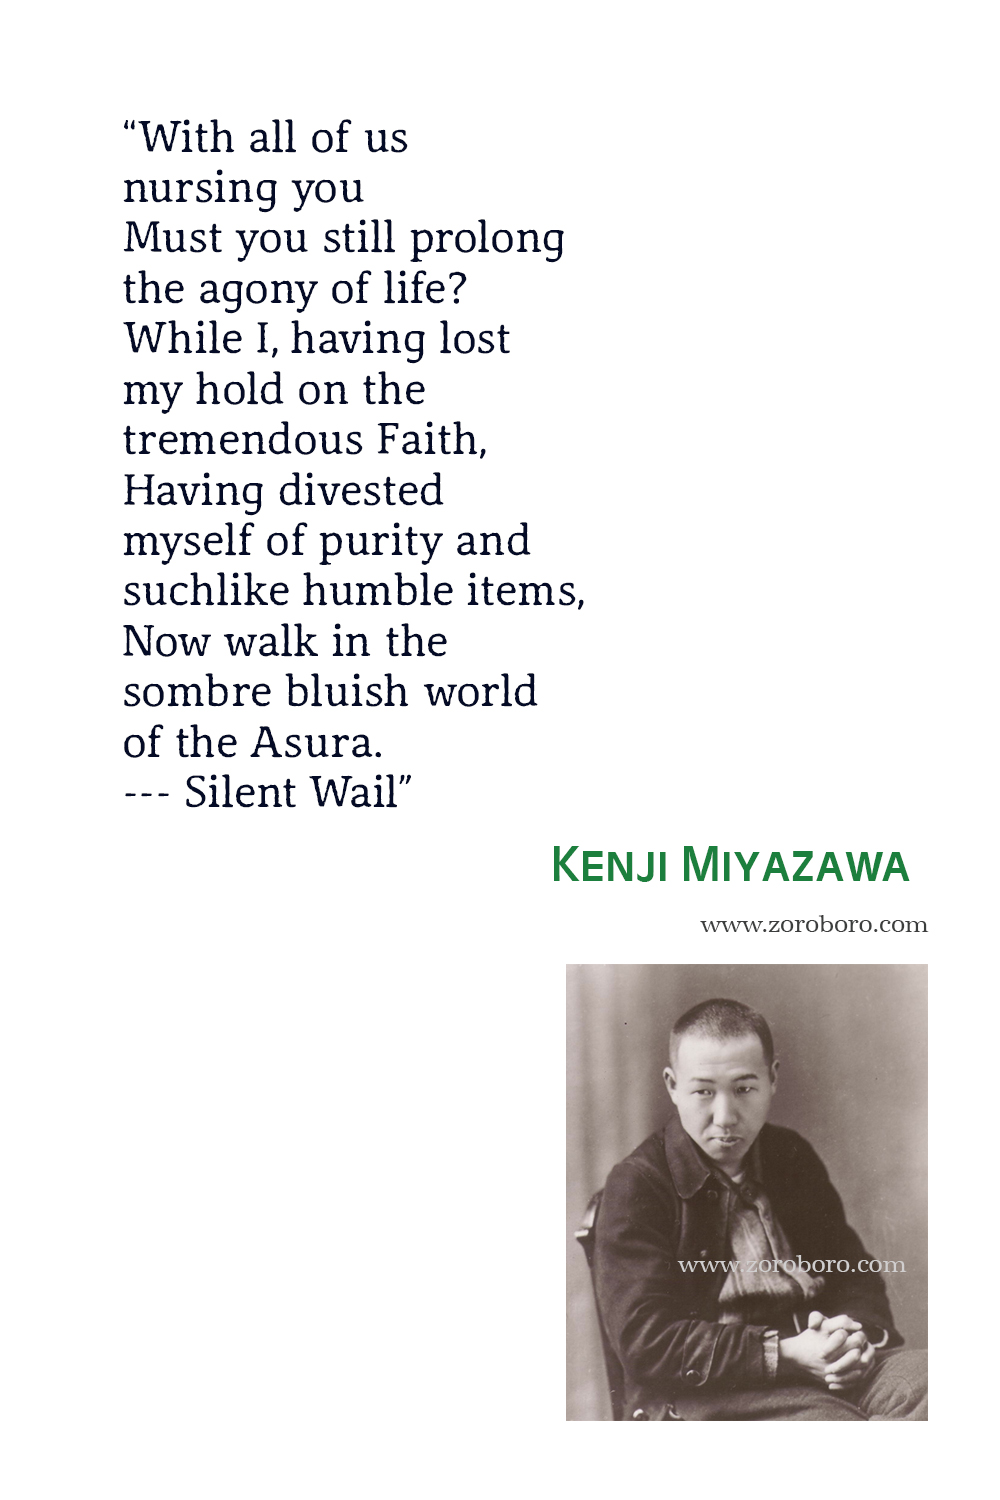 Kenji Miyazawa Quotes, Kenji Miyazawa Poems, Kenji Miyazawa Poet, Kenji Miyazawa Books Quotes, Kenji Miyazawa